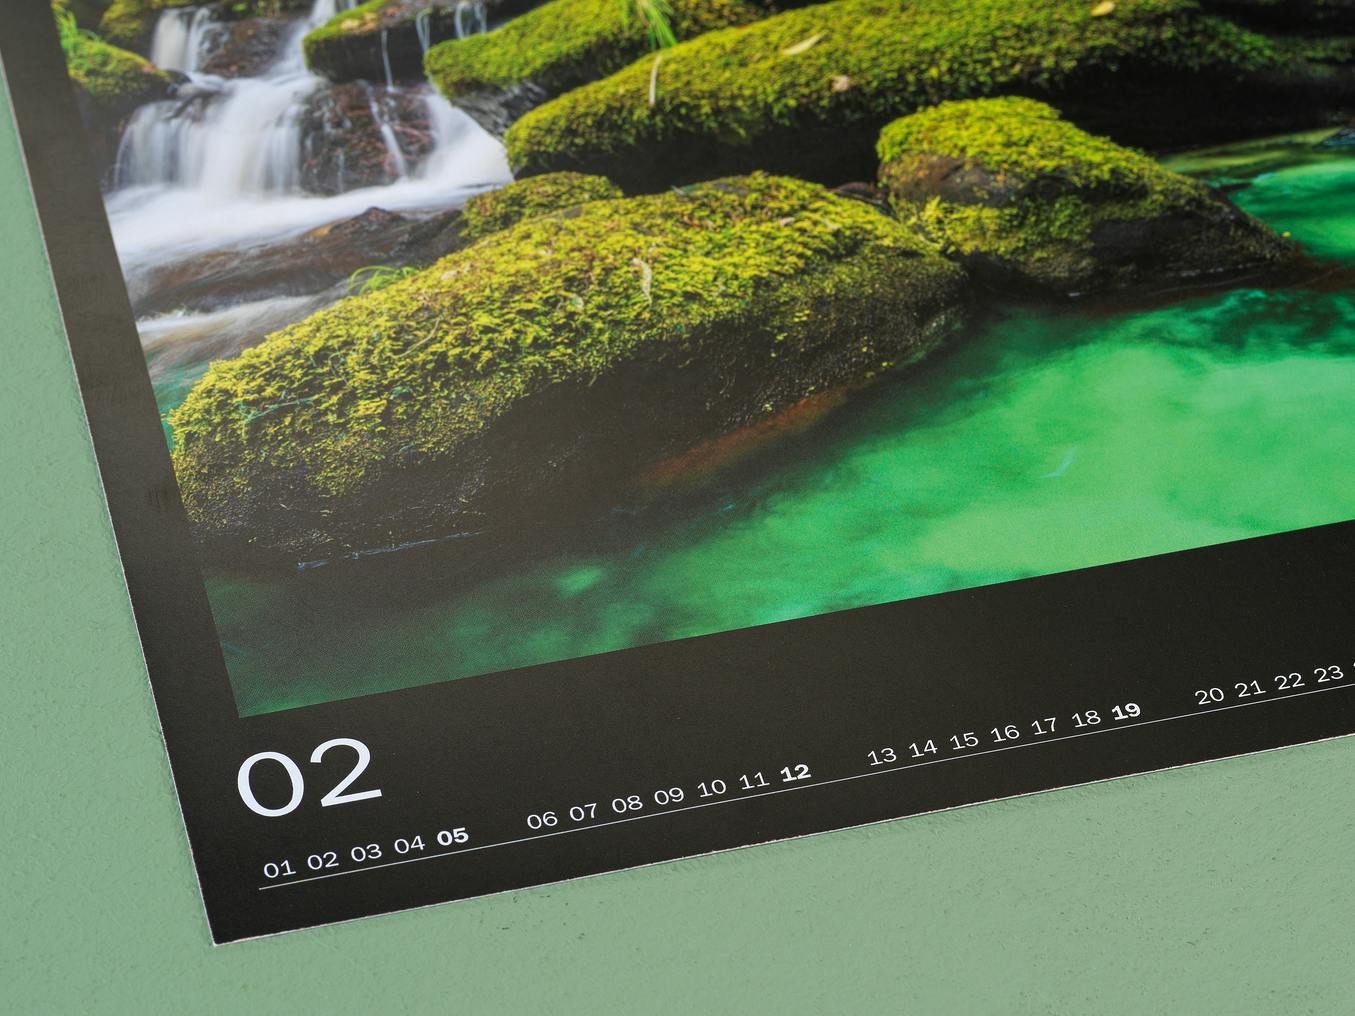 Detailansicht eines Fotokalenders mit Premiumpapier matt